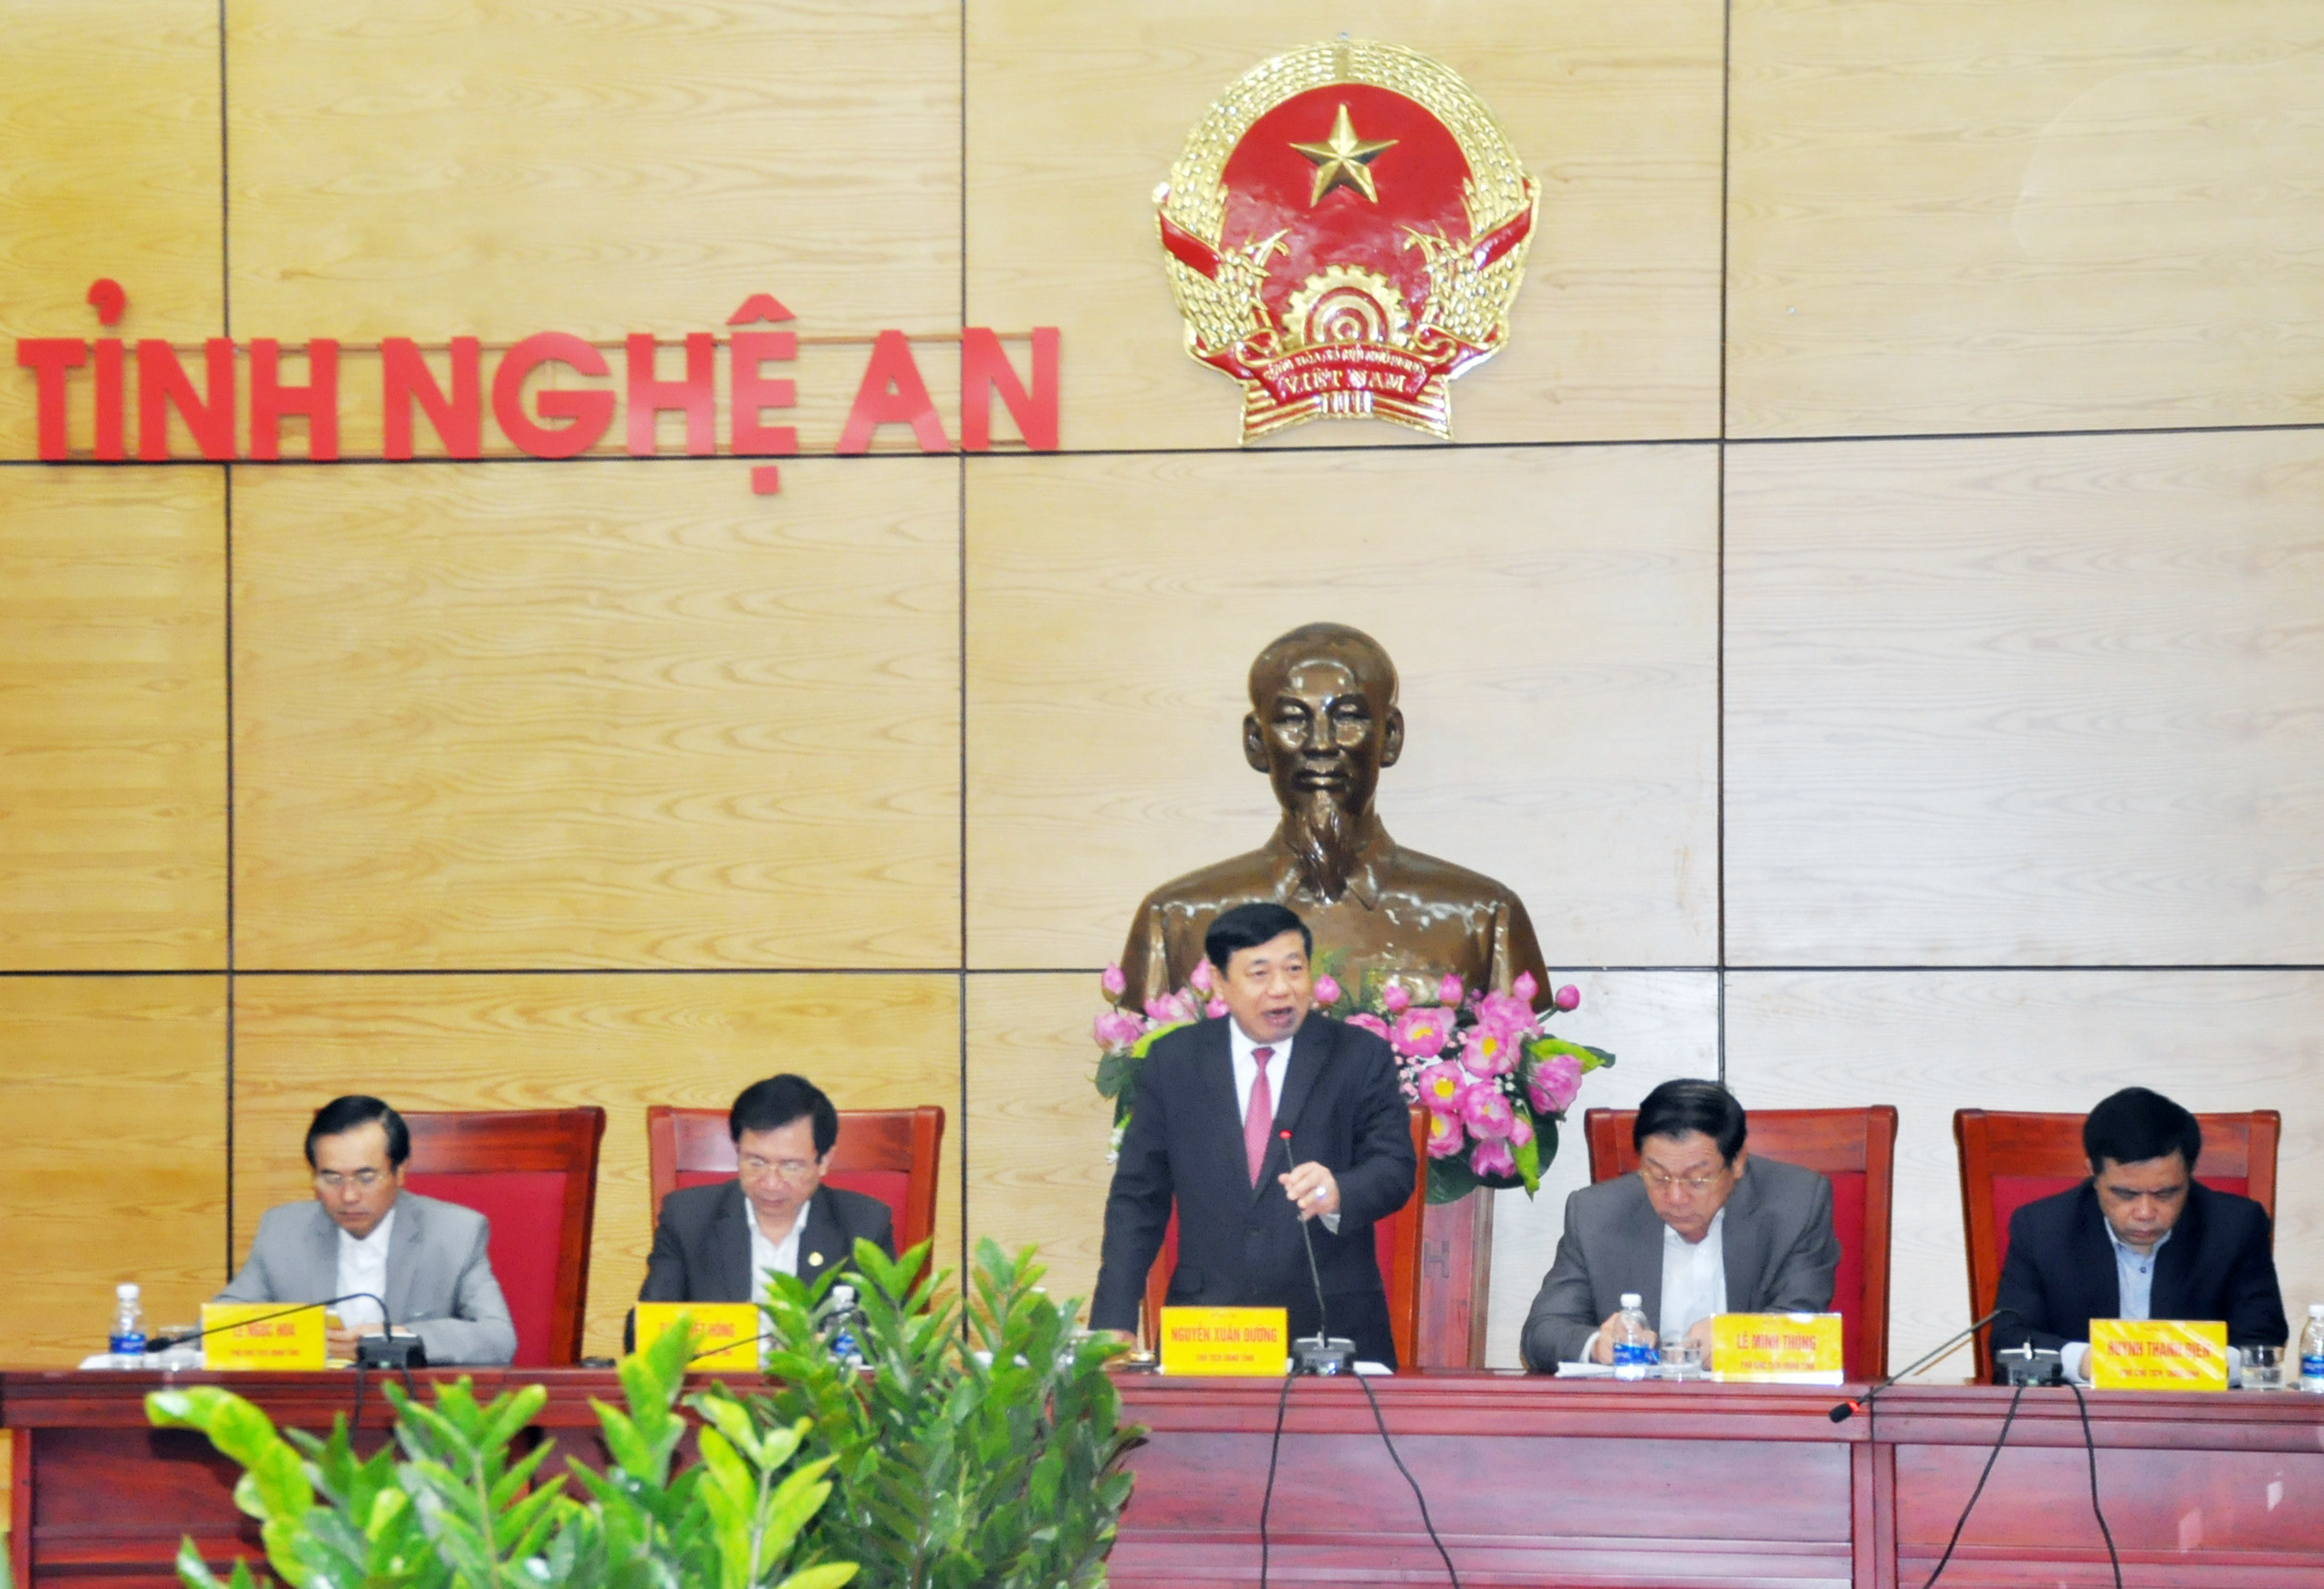 Đồng chí Nguyễn Xuân Đường - Phó bí thư Tỉnh ủy, Chủ tịch UBND tỉnh chủ trì phiên họp. Ảnh: Thu Huyền